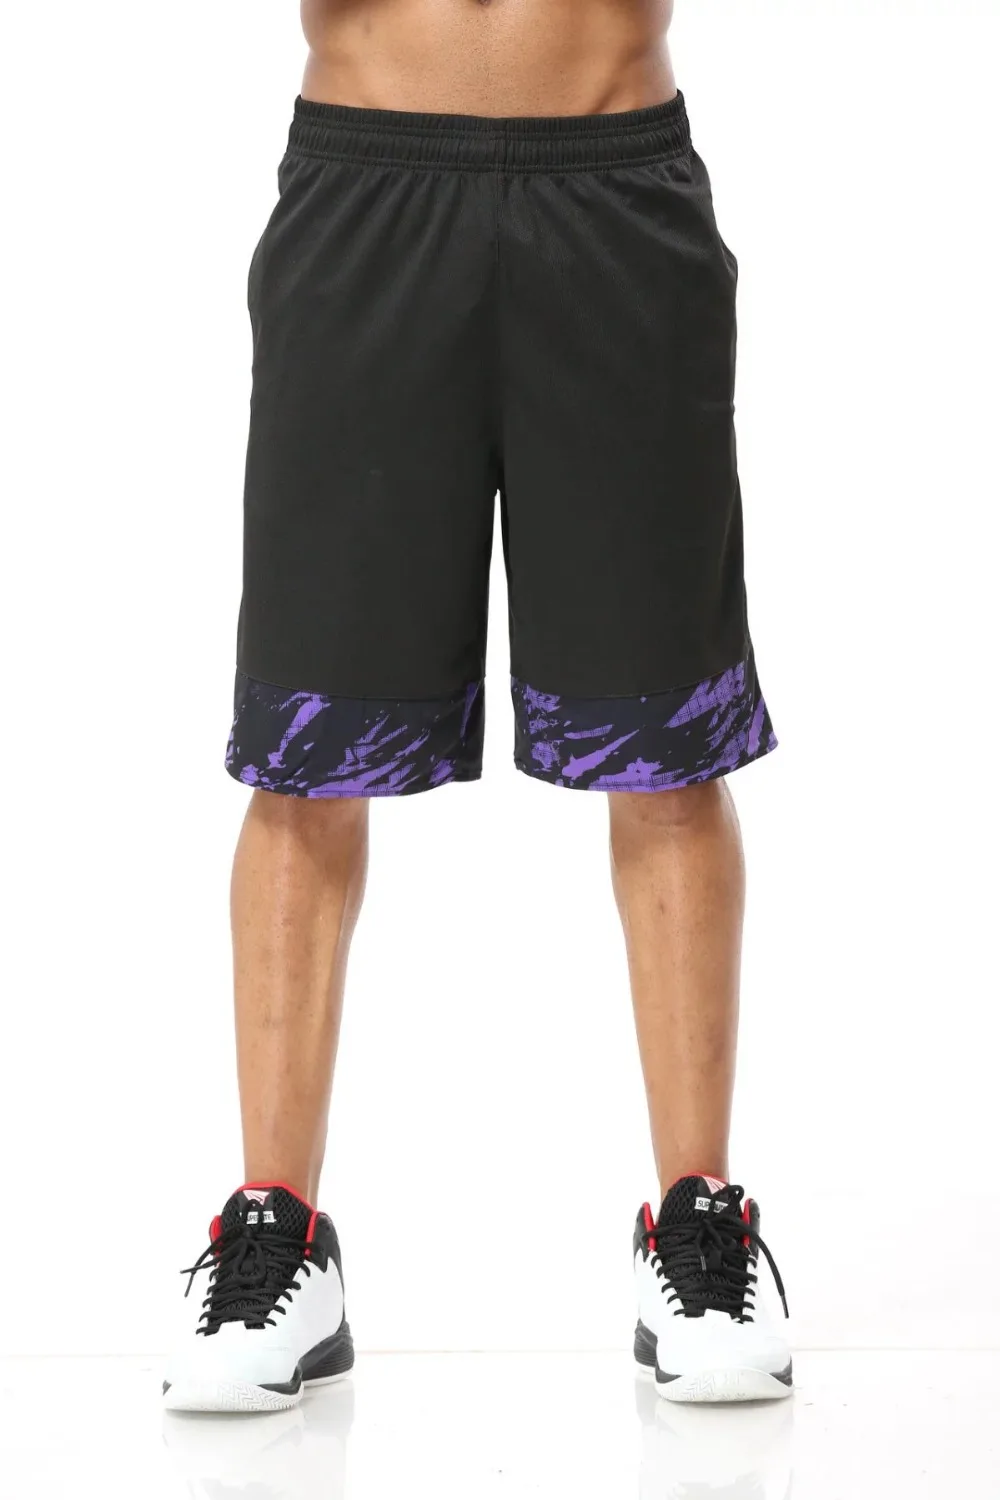 Мужские баскетбольные шорты для бега, тренировочная командная игра, спортивная одежда для фитнеса, тренажерного зала, дышащие быстросохнущие свободные шорты для тенниса, Лоскутные шорты с принтом